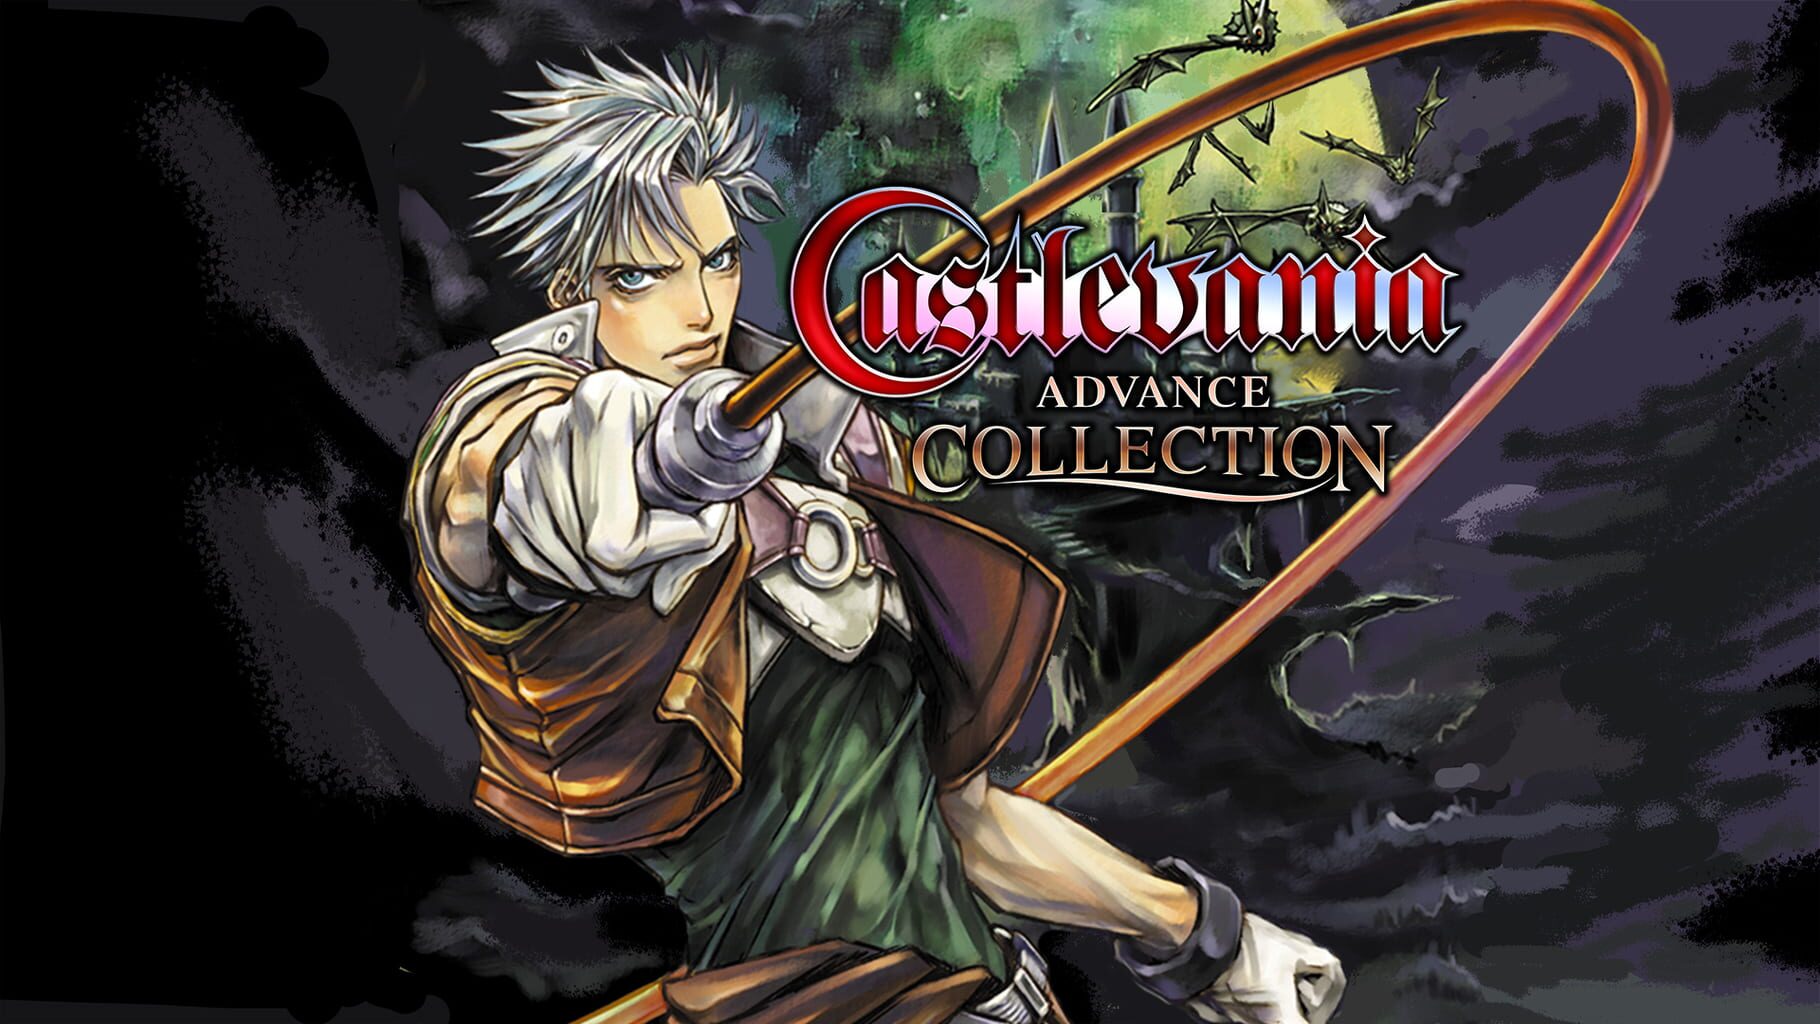 Castlevania Advance Collection artwork